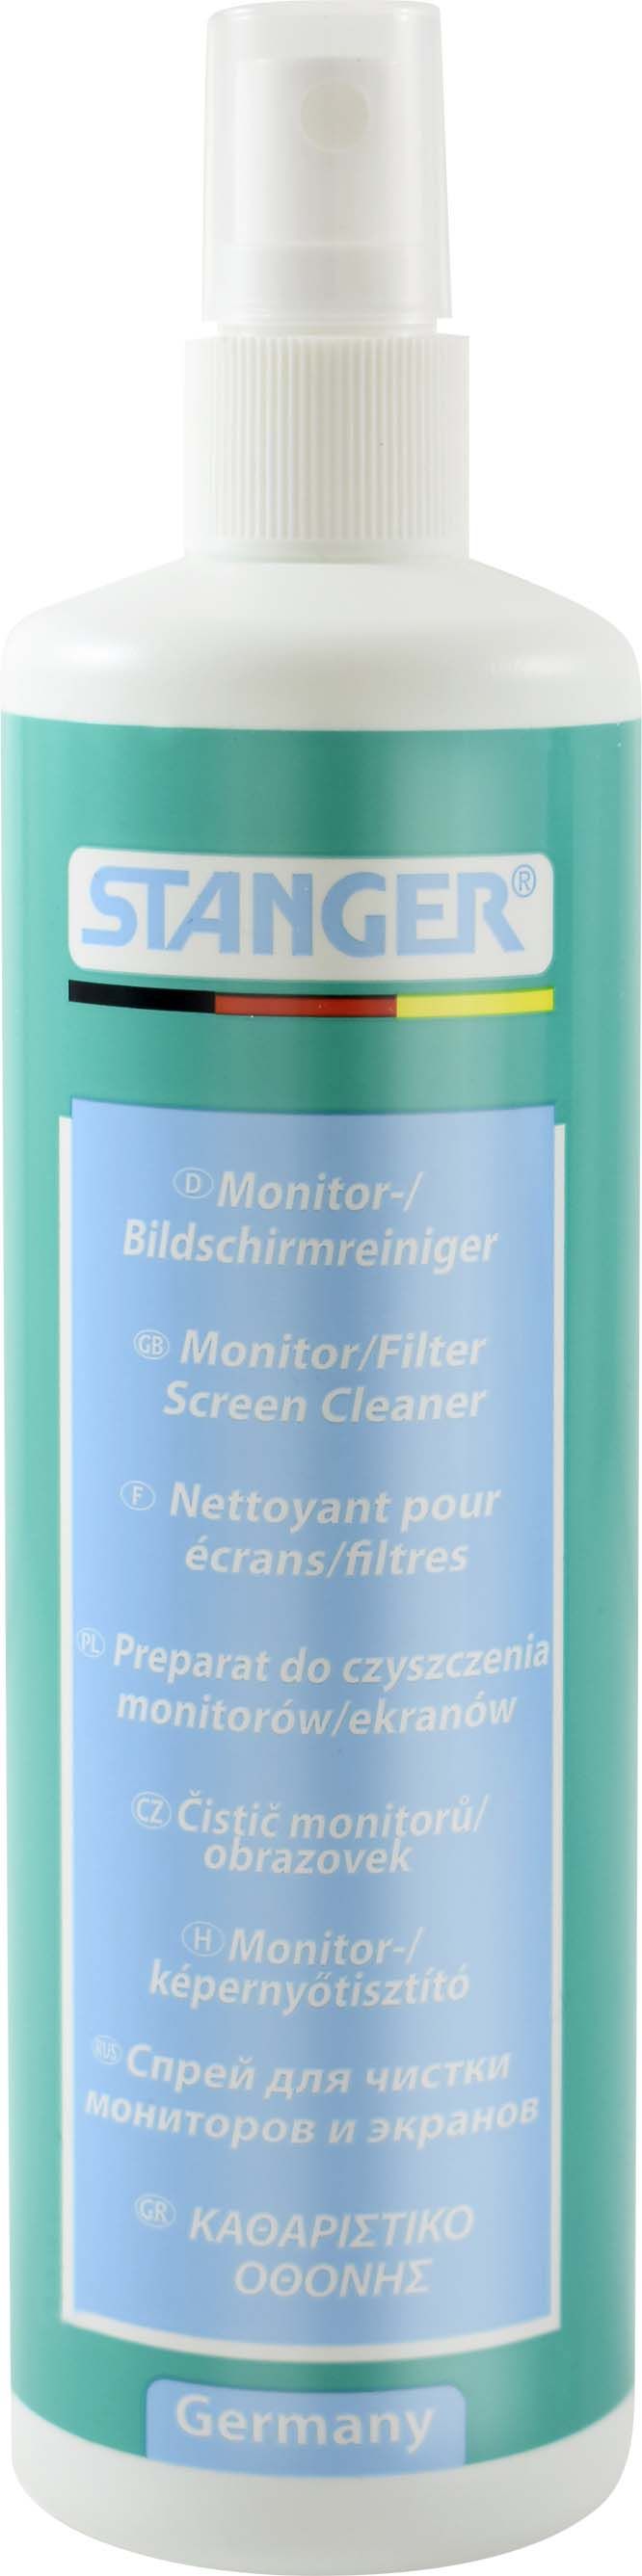 Spray Curatare Monitor Stanger - 250 Ml sanito.ro